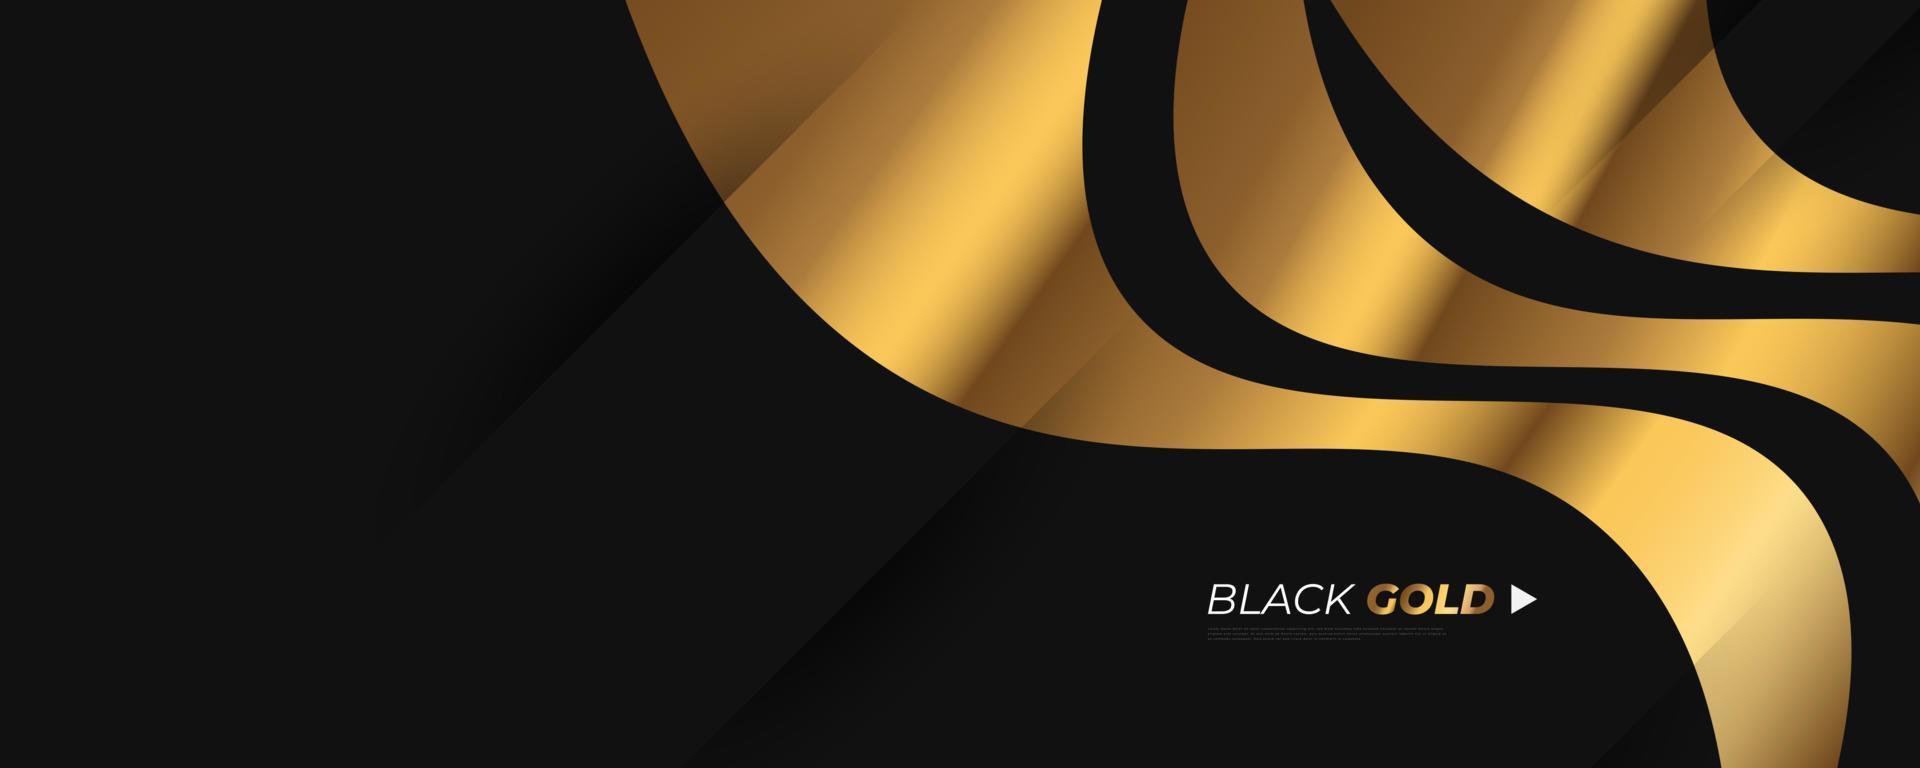 lyxig svart och guld bakgrund i pappersklippt stil med glitter och ljuseffekt. premium svart och guld bakgrund för pris, nominering, ceremoni, formell inbjudan eller certifikatdesign vektor